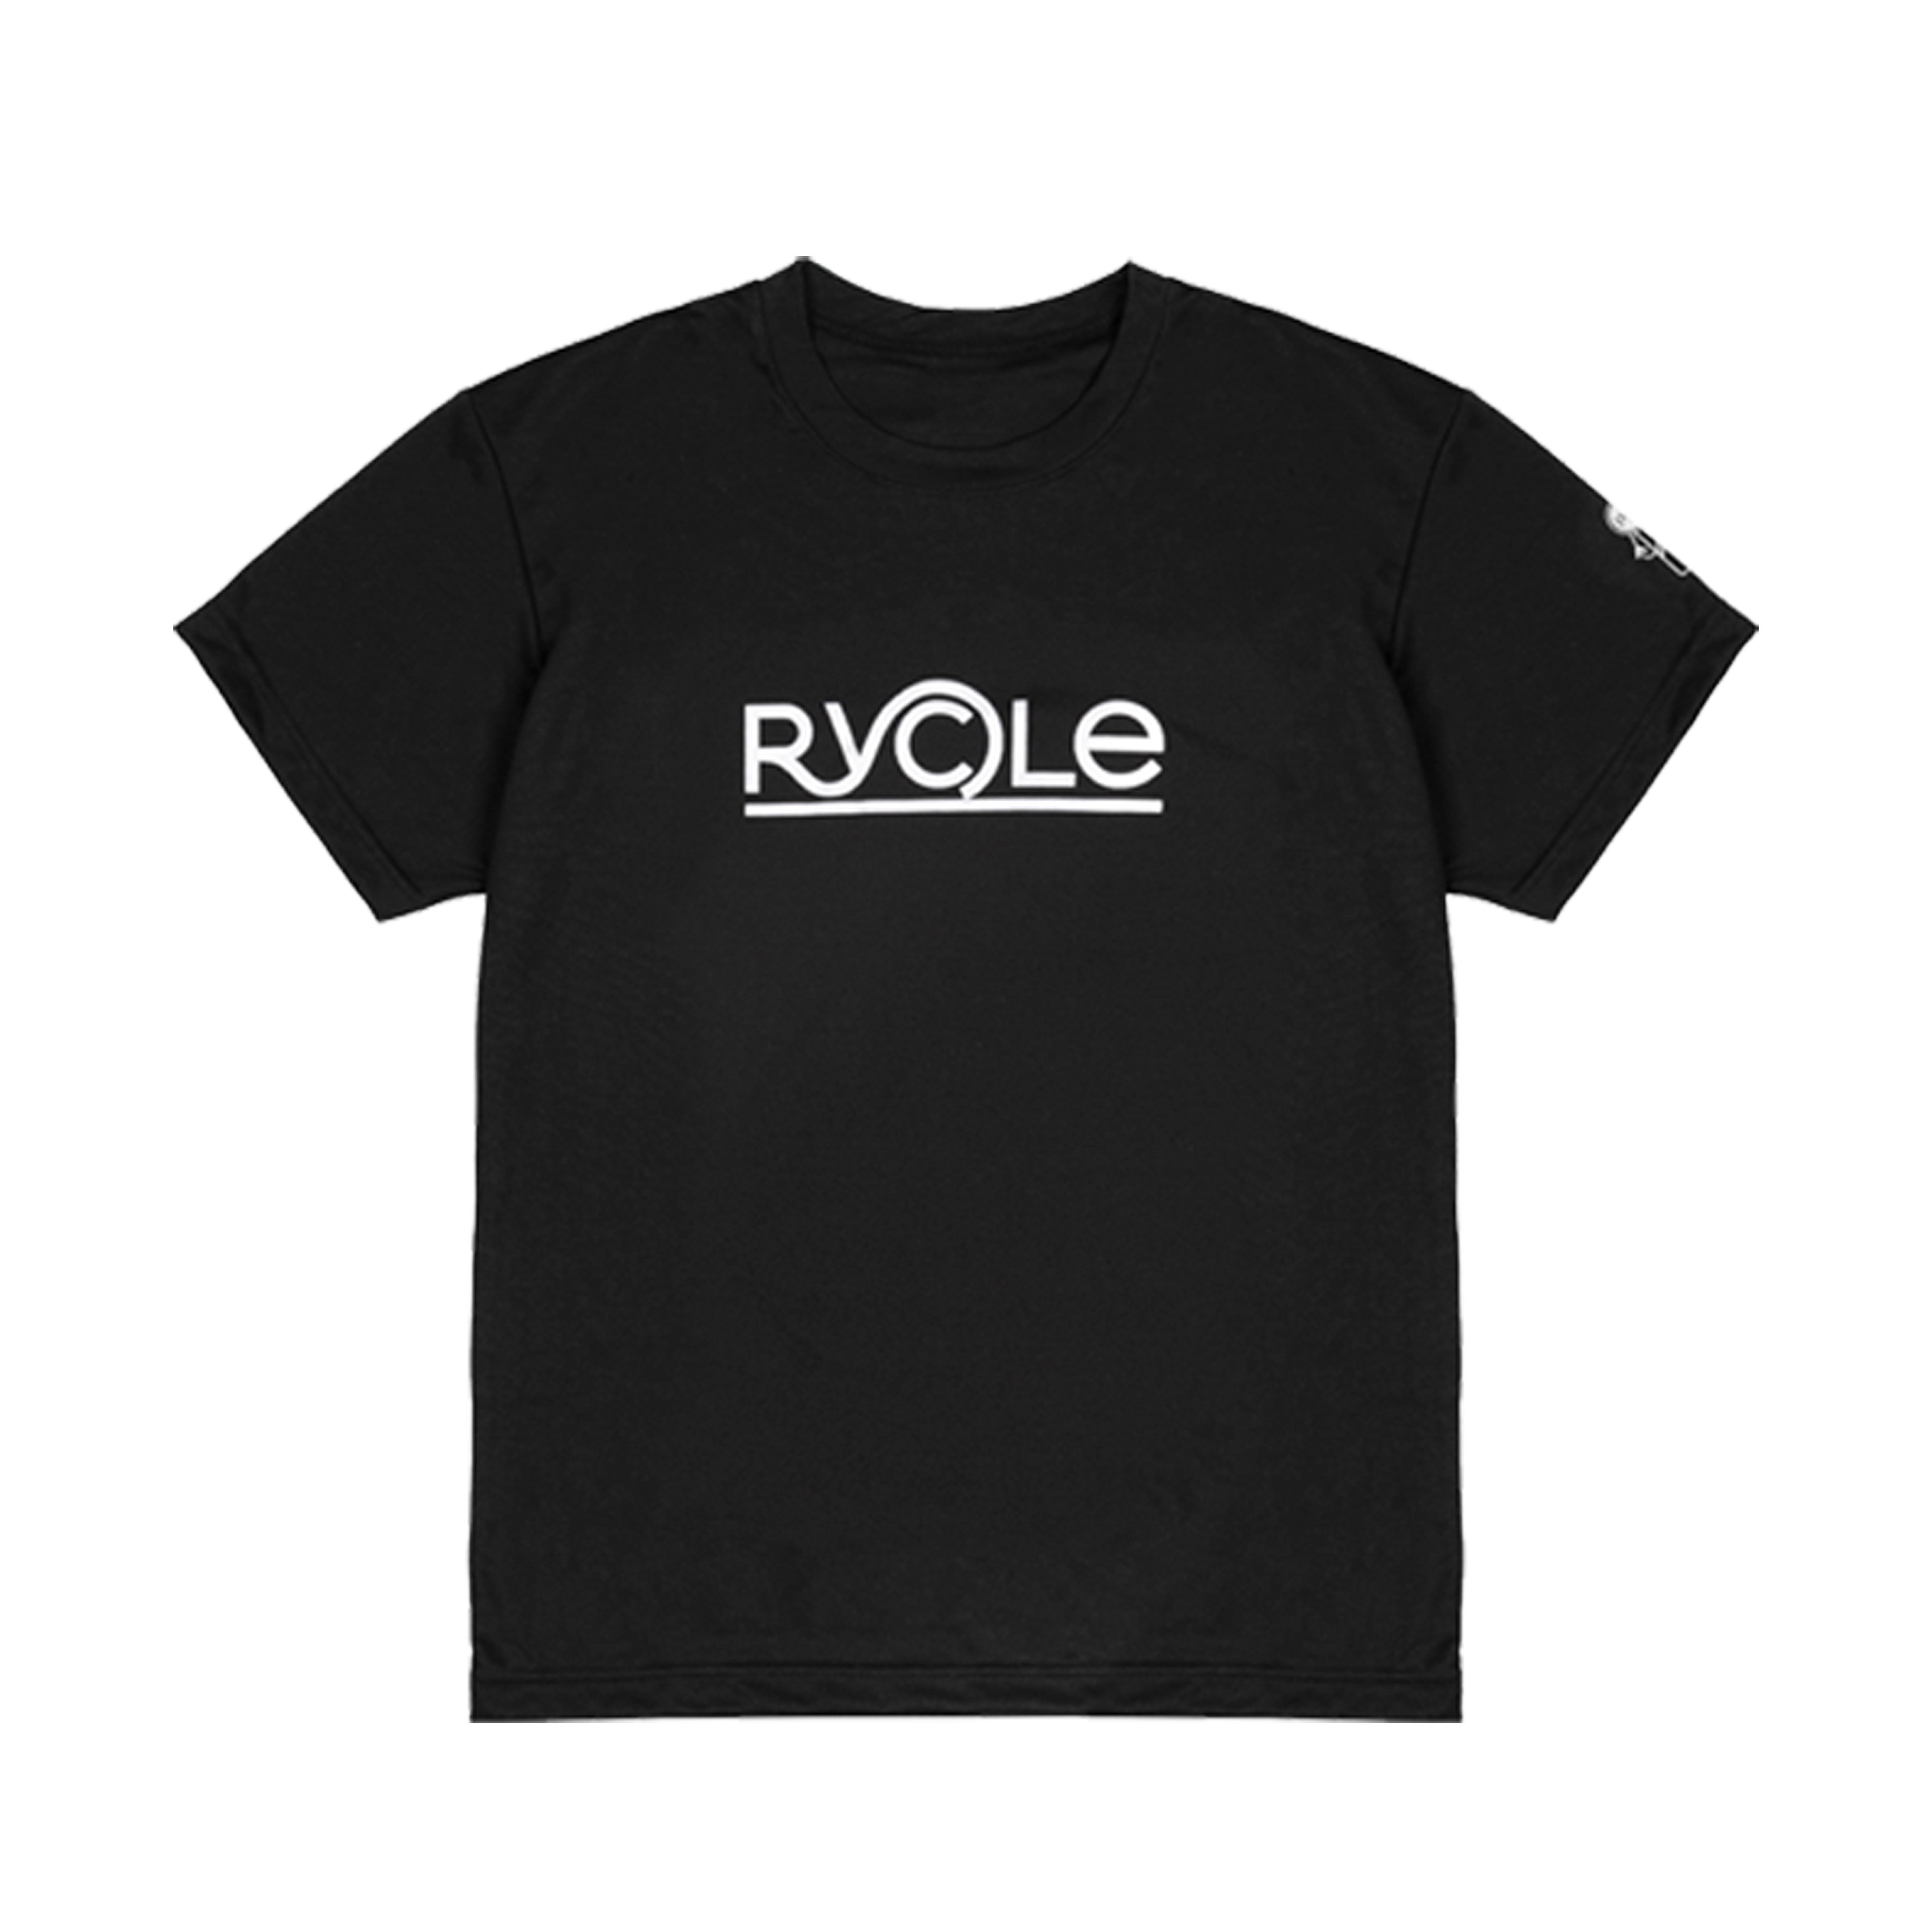 페트병 플라스틱 재활용 블랙 반팔 티셔츠 Rycle(리클) 대표이미지 섬네일